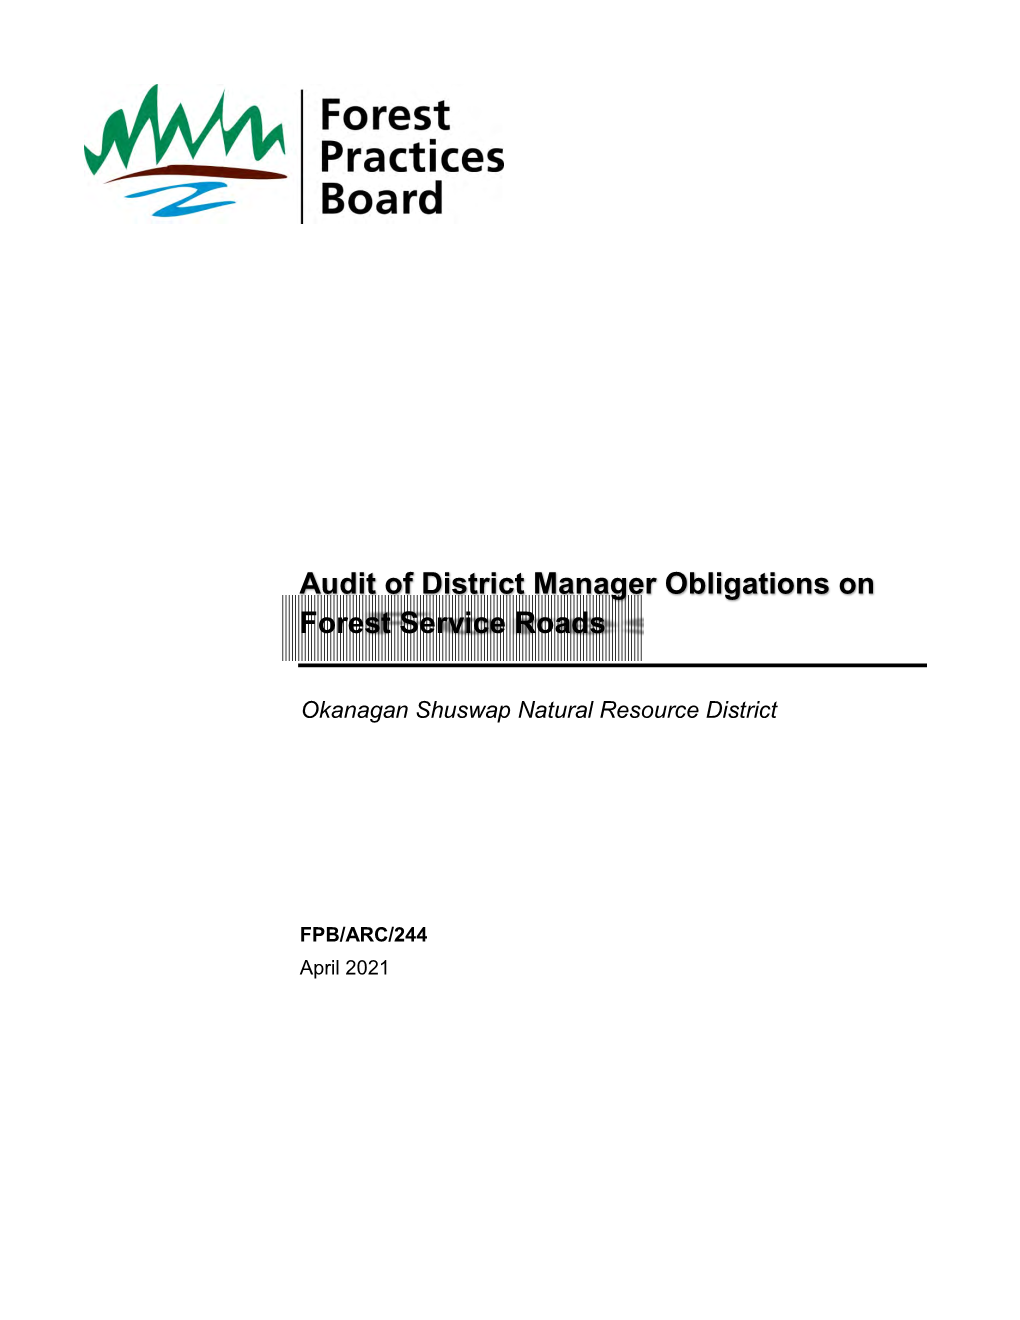 Audit of District Manager Obligations on Fsrs